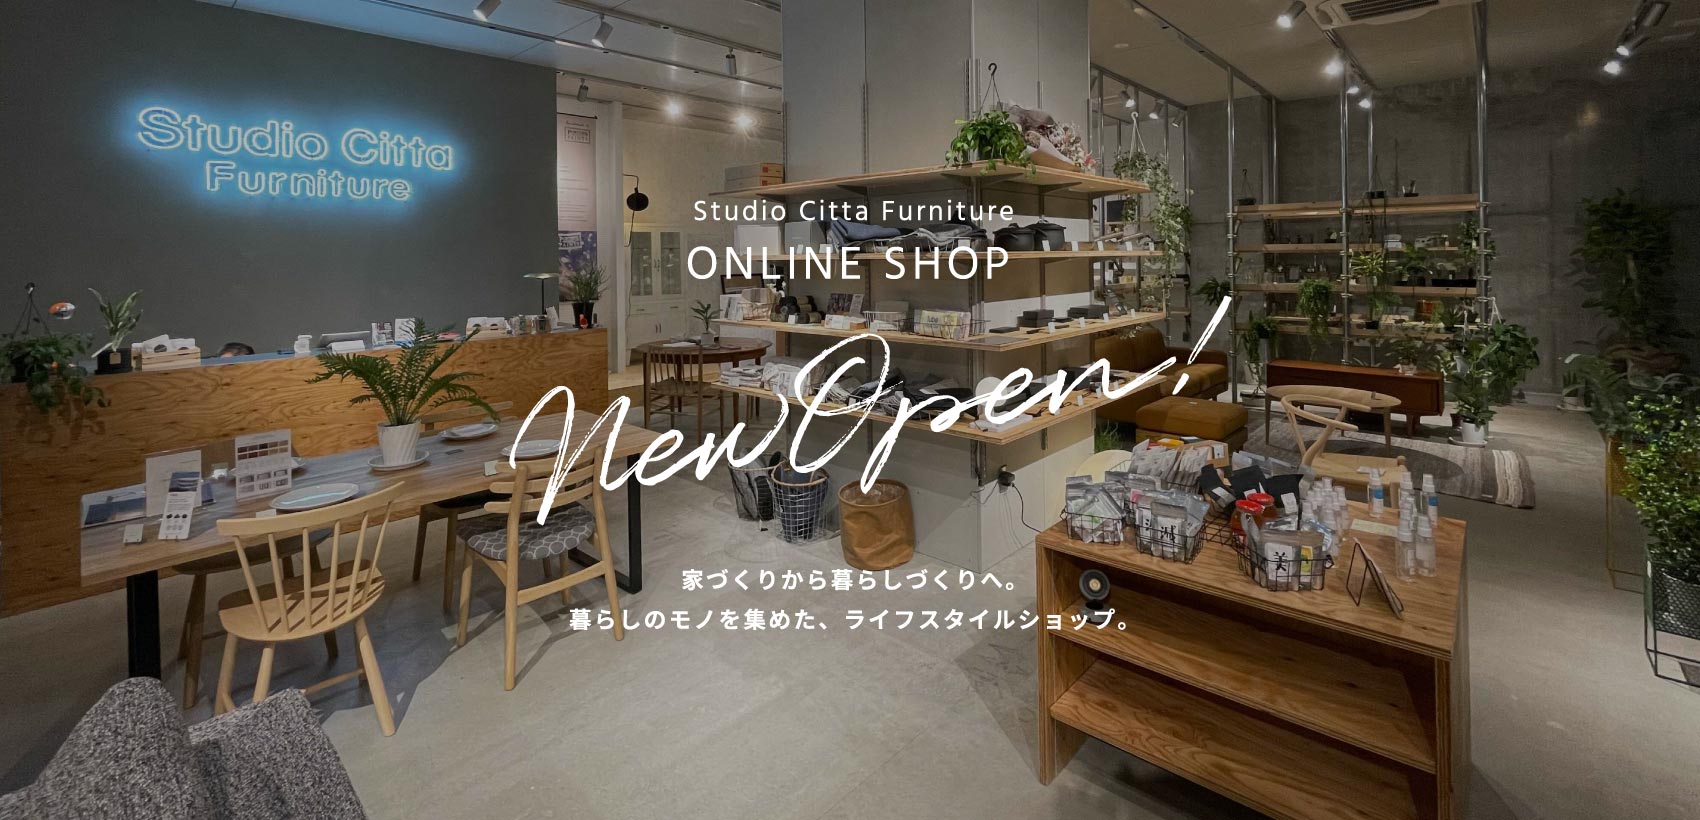 Studio Citta Furniture オンラインショップ New Open